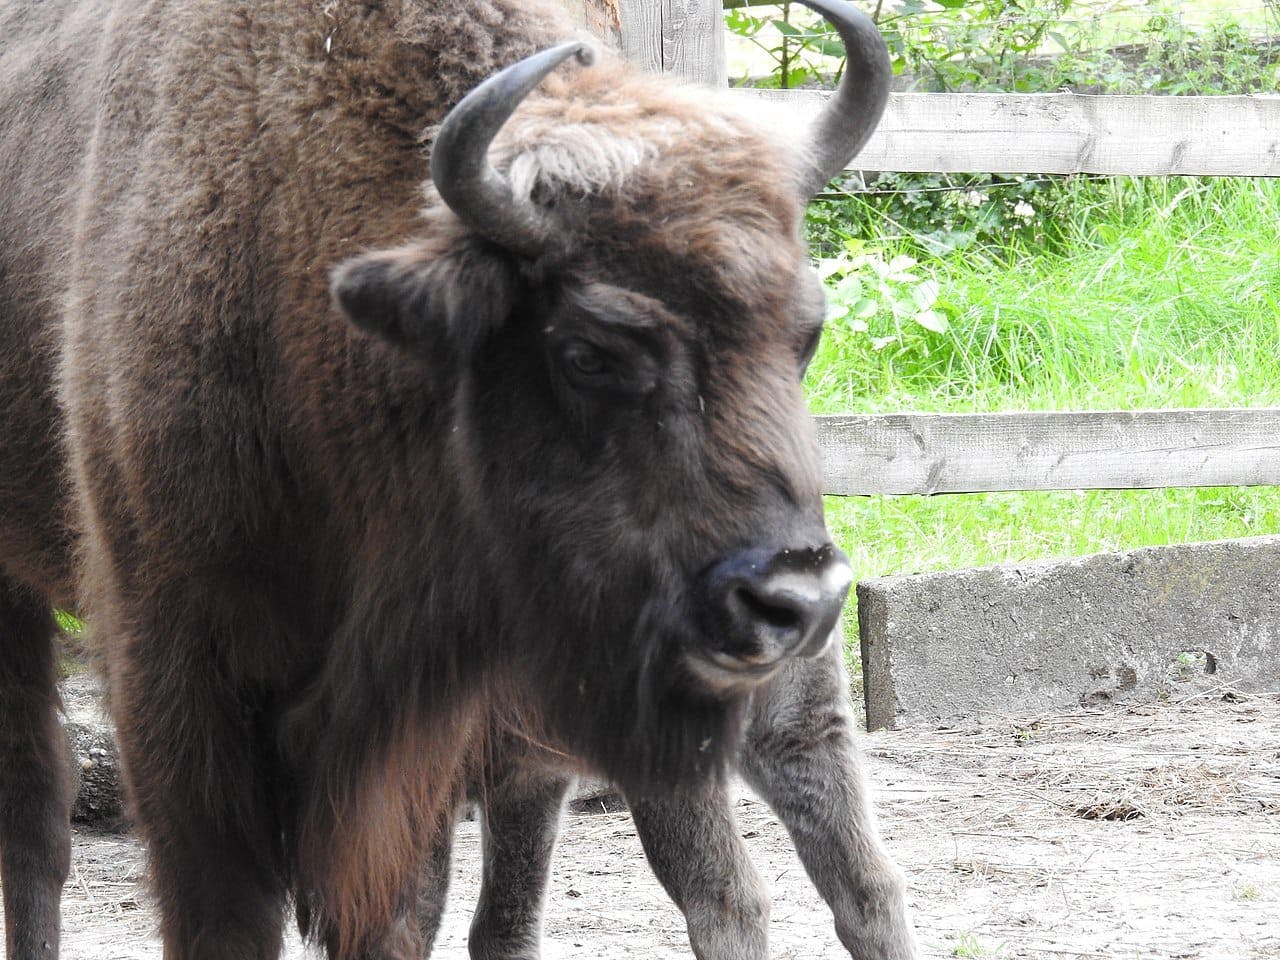 Wolin National Park - Bison Sanctuary